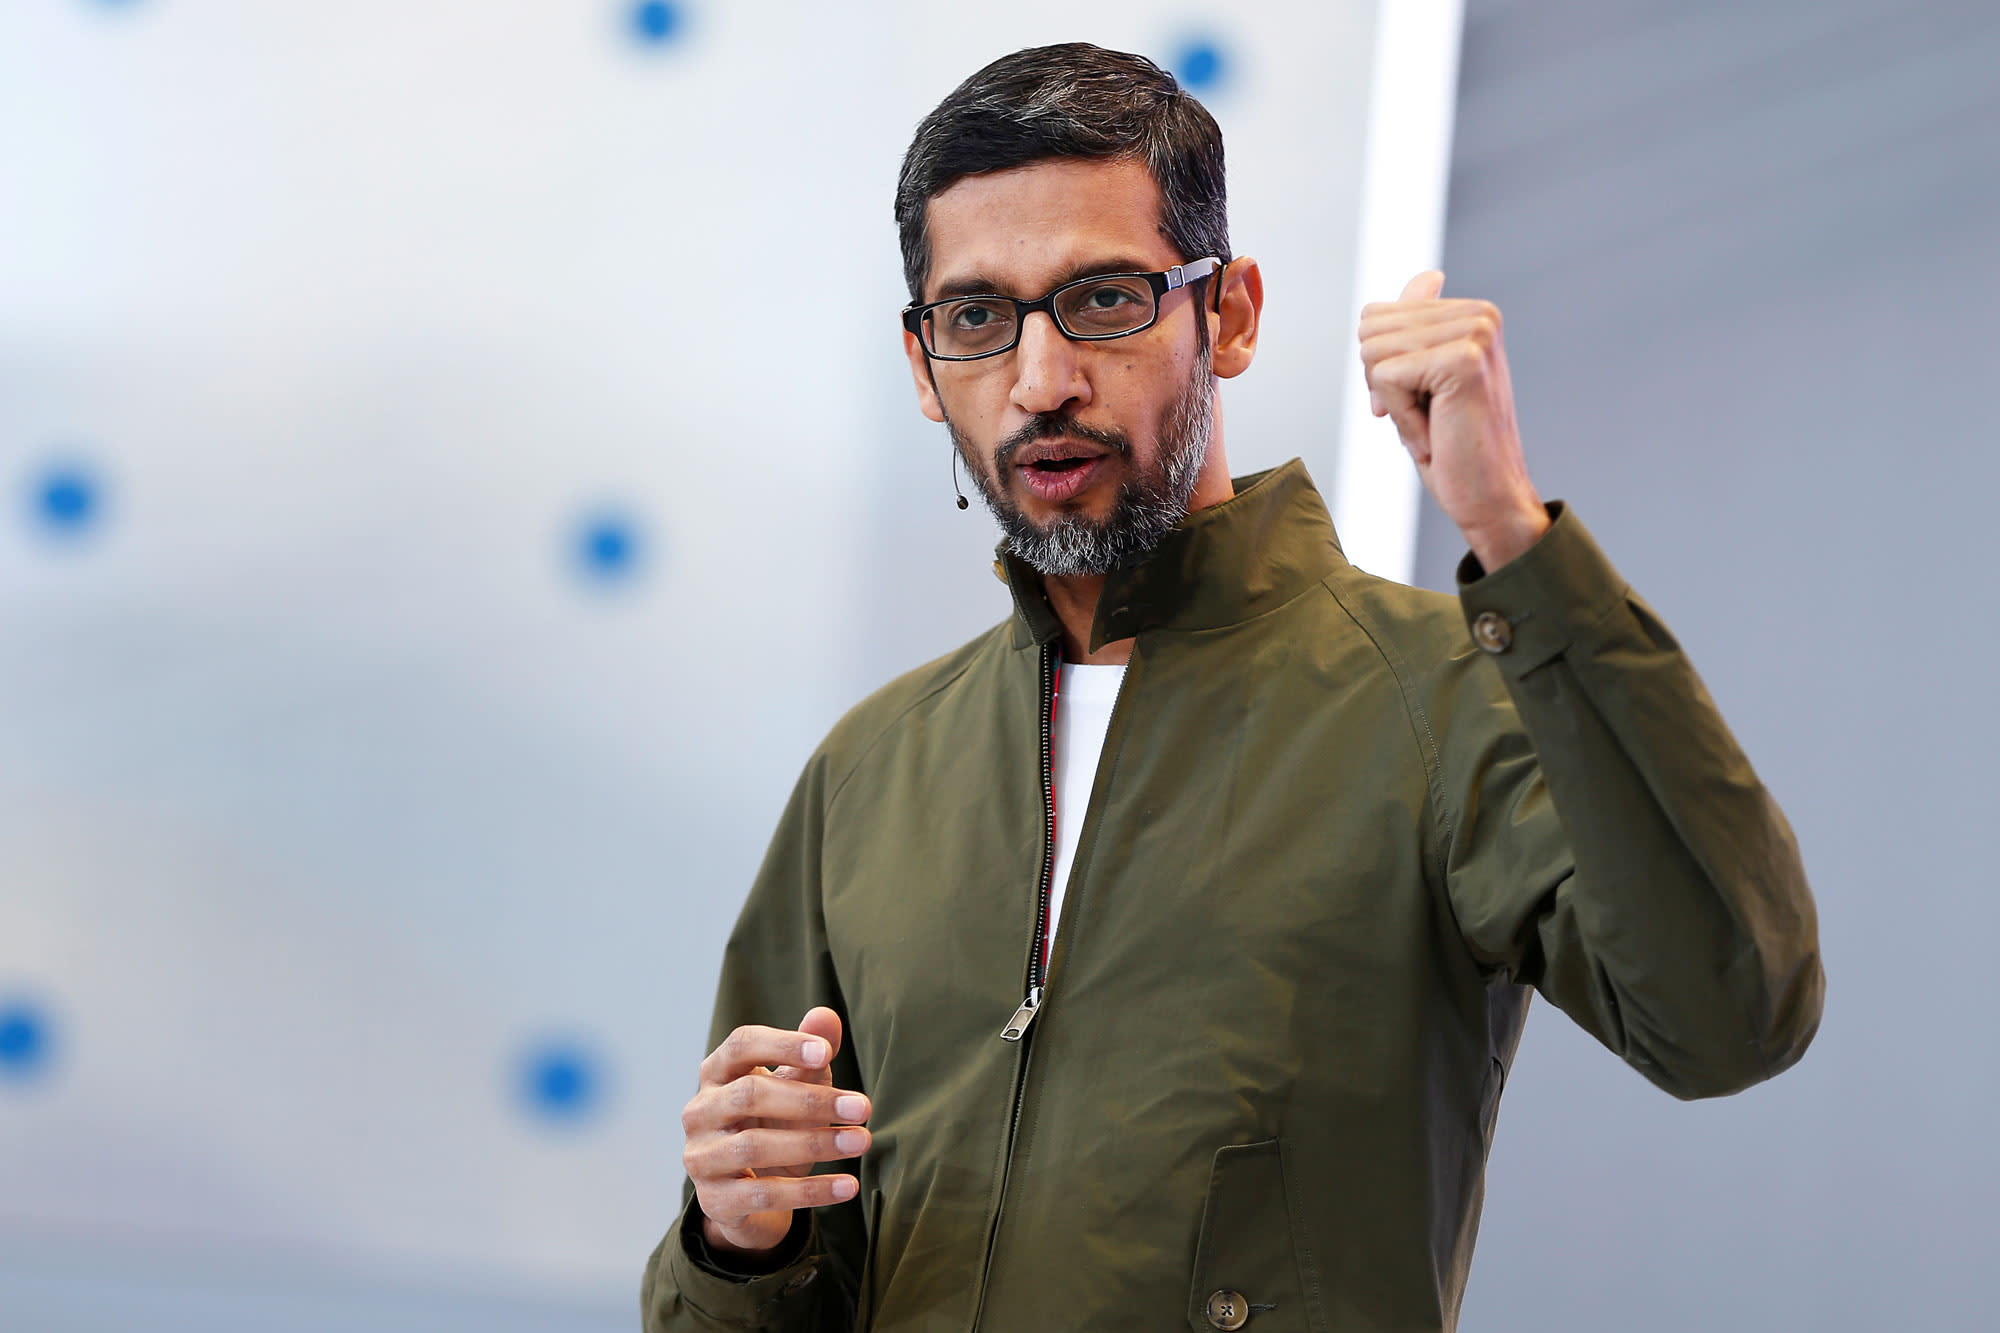 La reorganización del Asistente de Google sigue al lanzamiento de Bard, dice un memorando